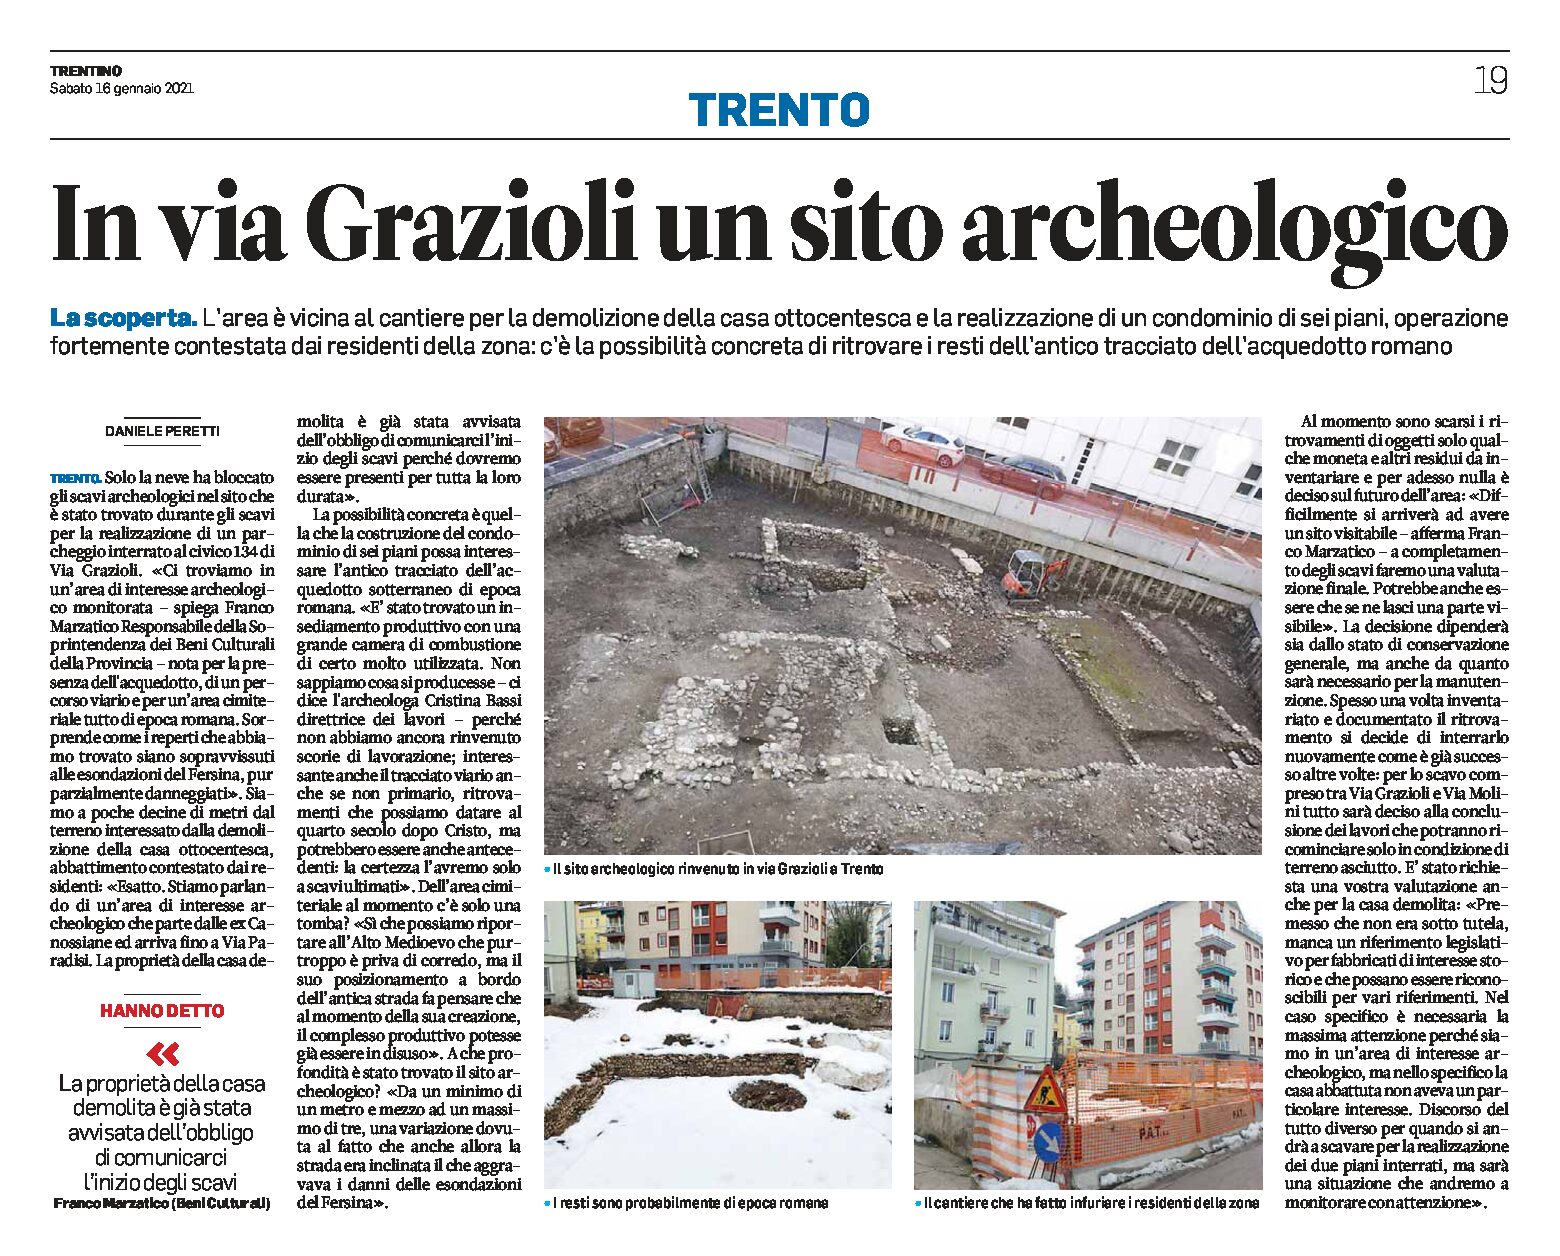 Trento, via Grazioli: un sito archeologico